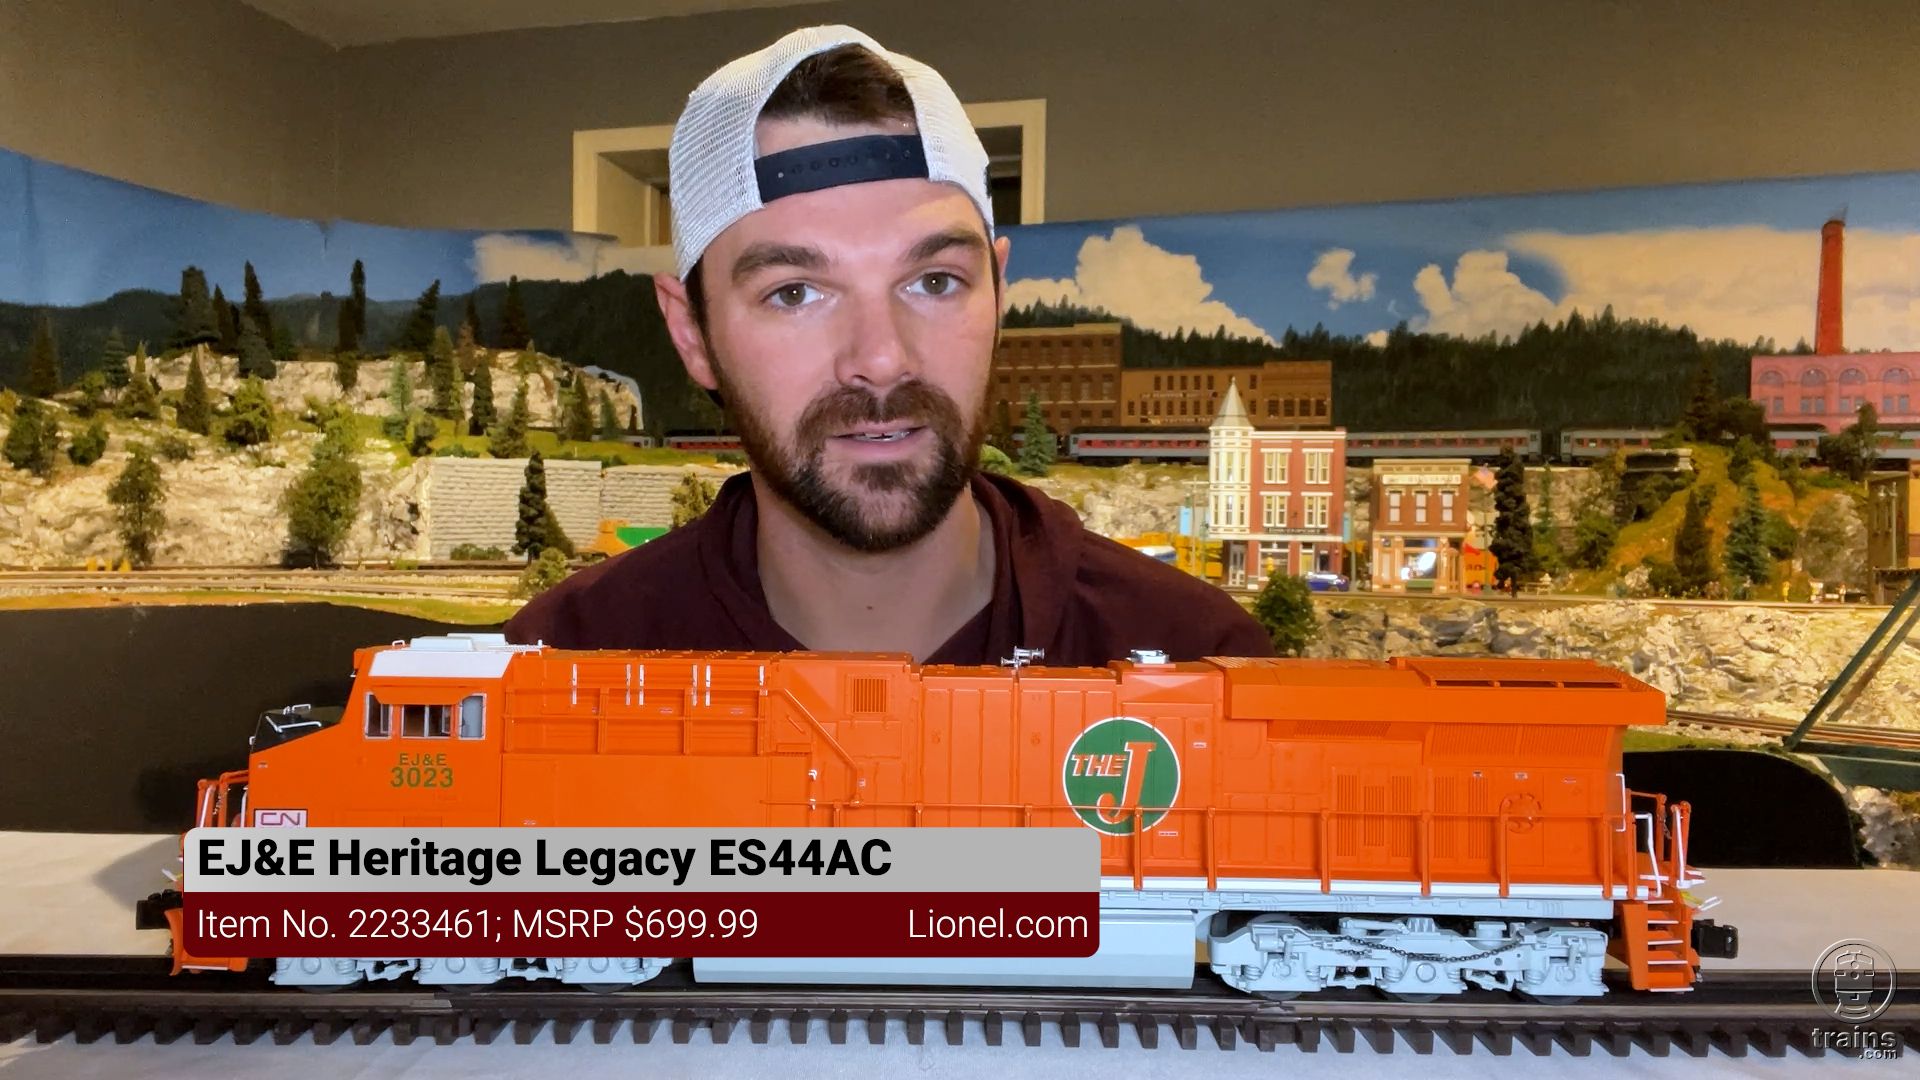 Lionel ES44AC locomotive personifies modern power